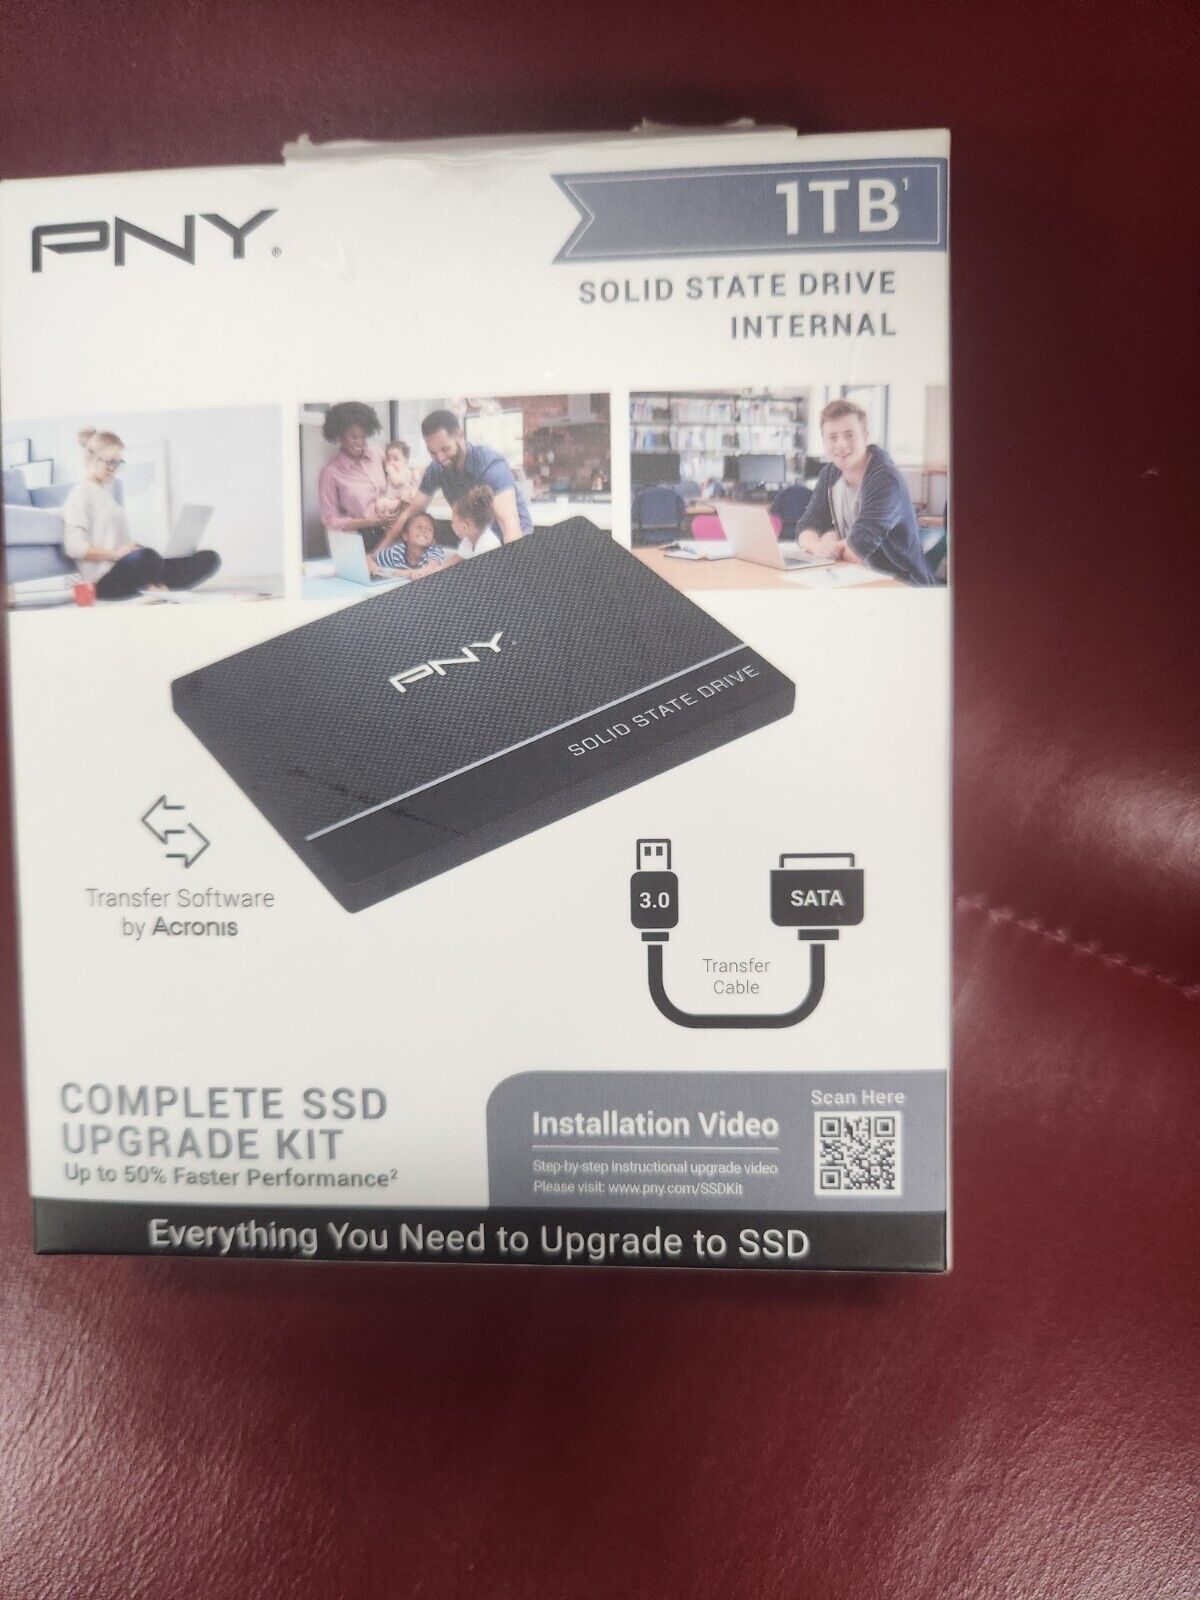 pny 1tb ssd external Complete Ssd Upgrade Kit